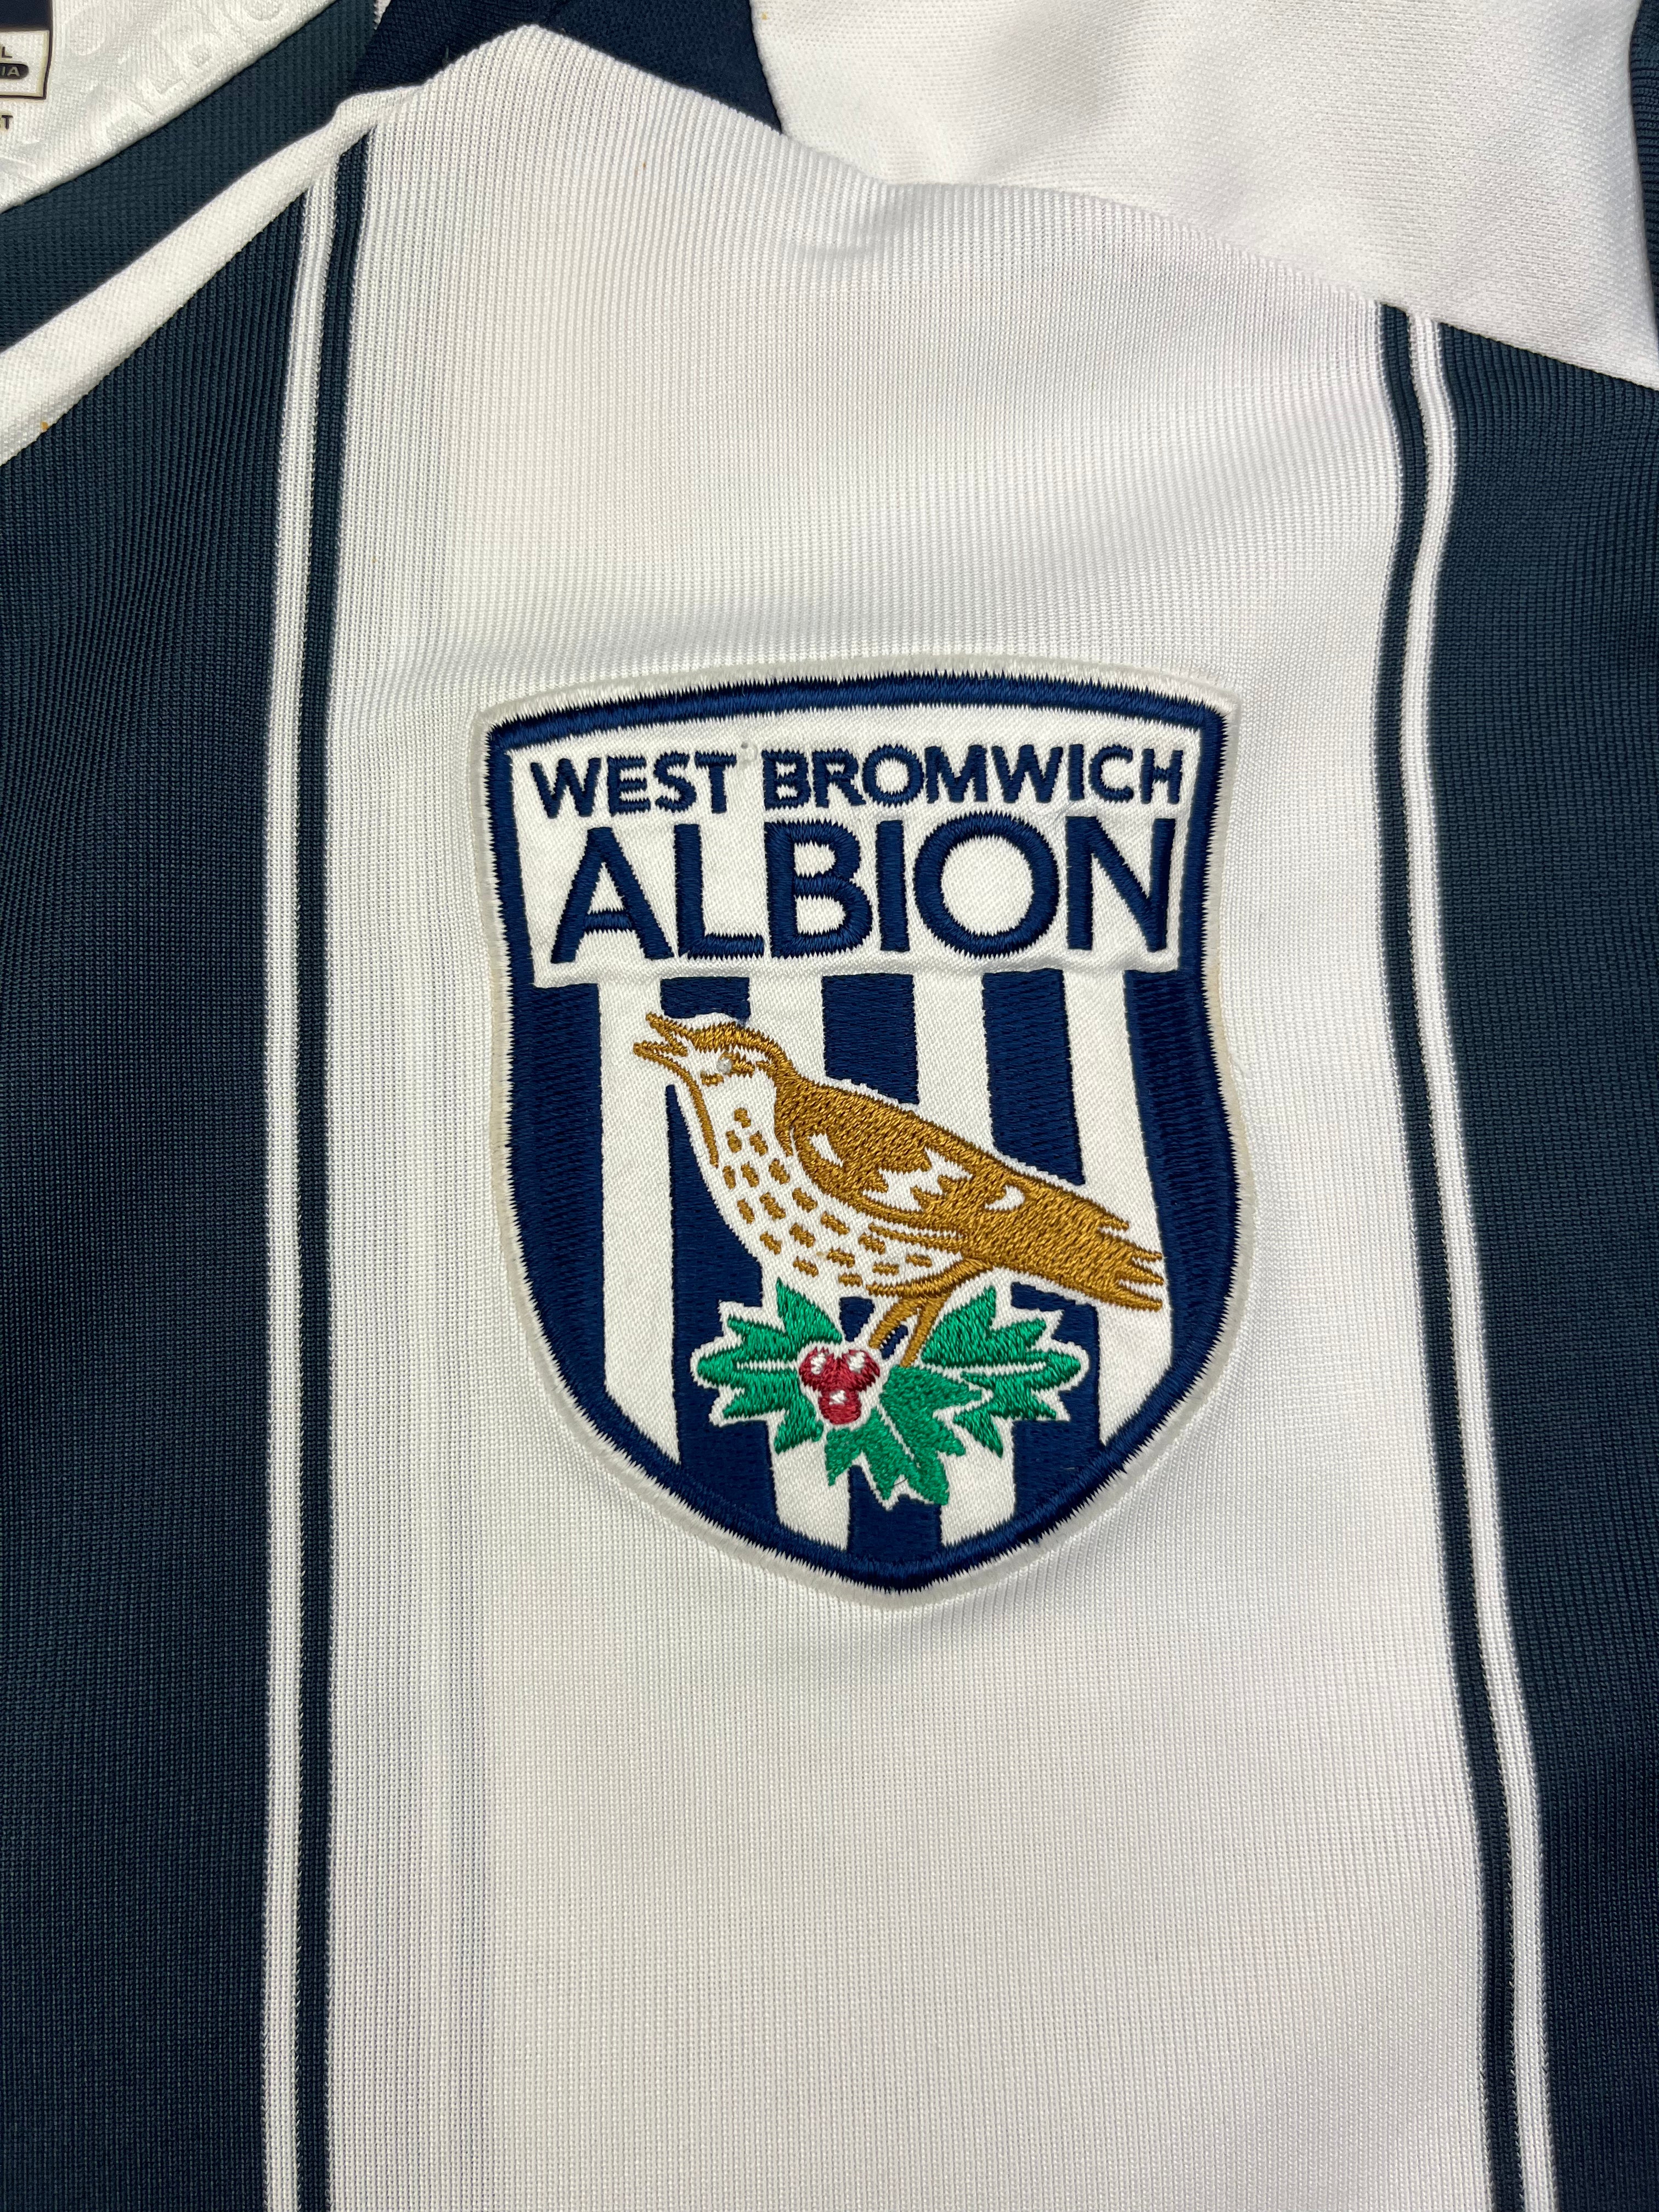 2008/09 West Bromwich Albion Home Shirt (L) 8/10